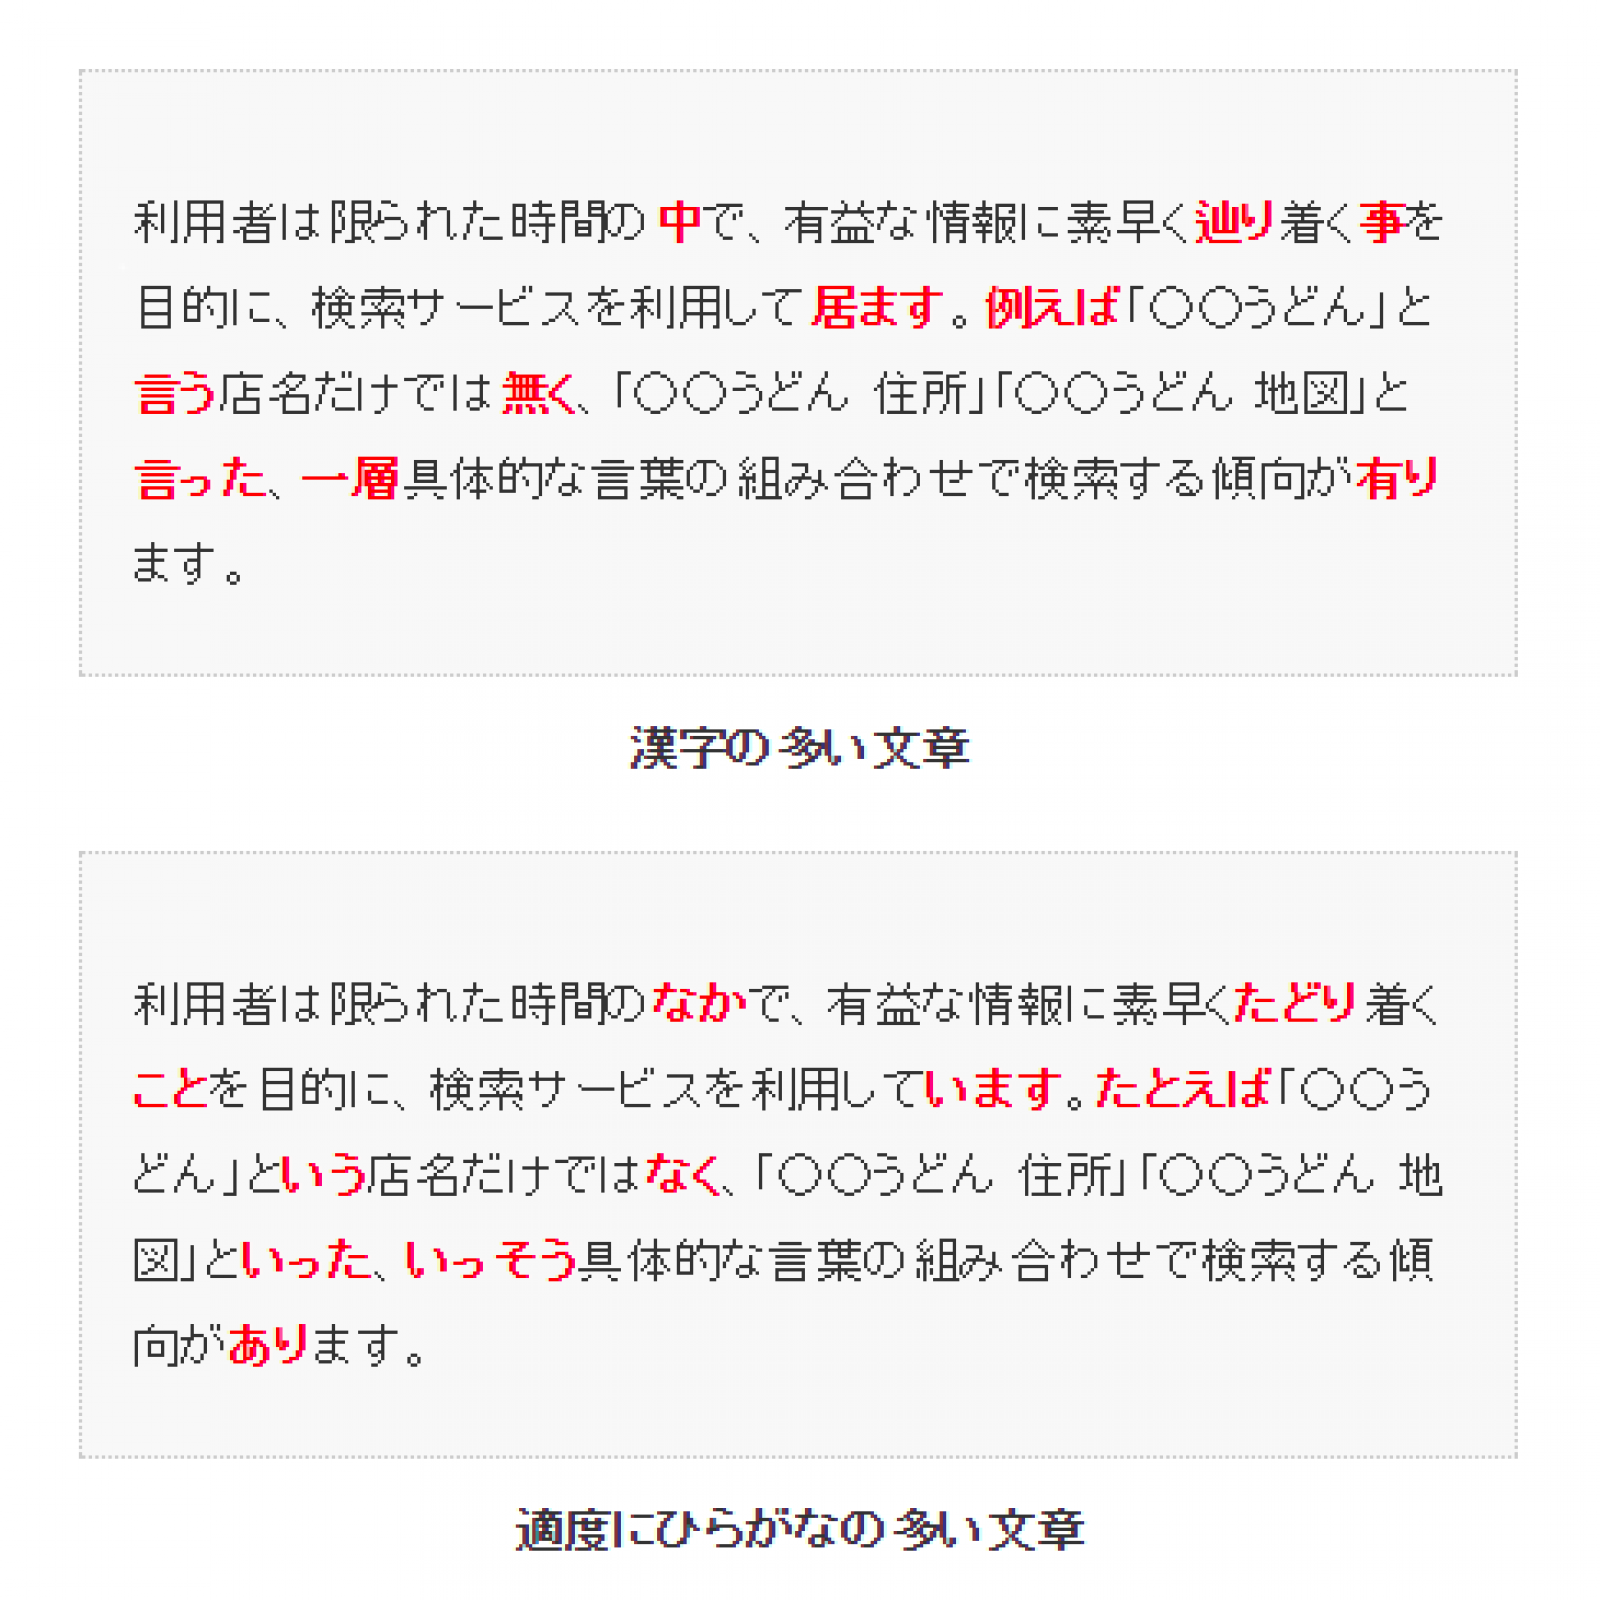 漢字とひらがなの使い分け方は 164例を一気に紹介 特別編2 Web文章入門 全7回 Web担当者forum